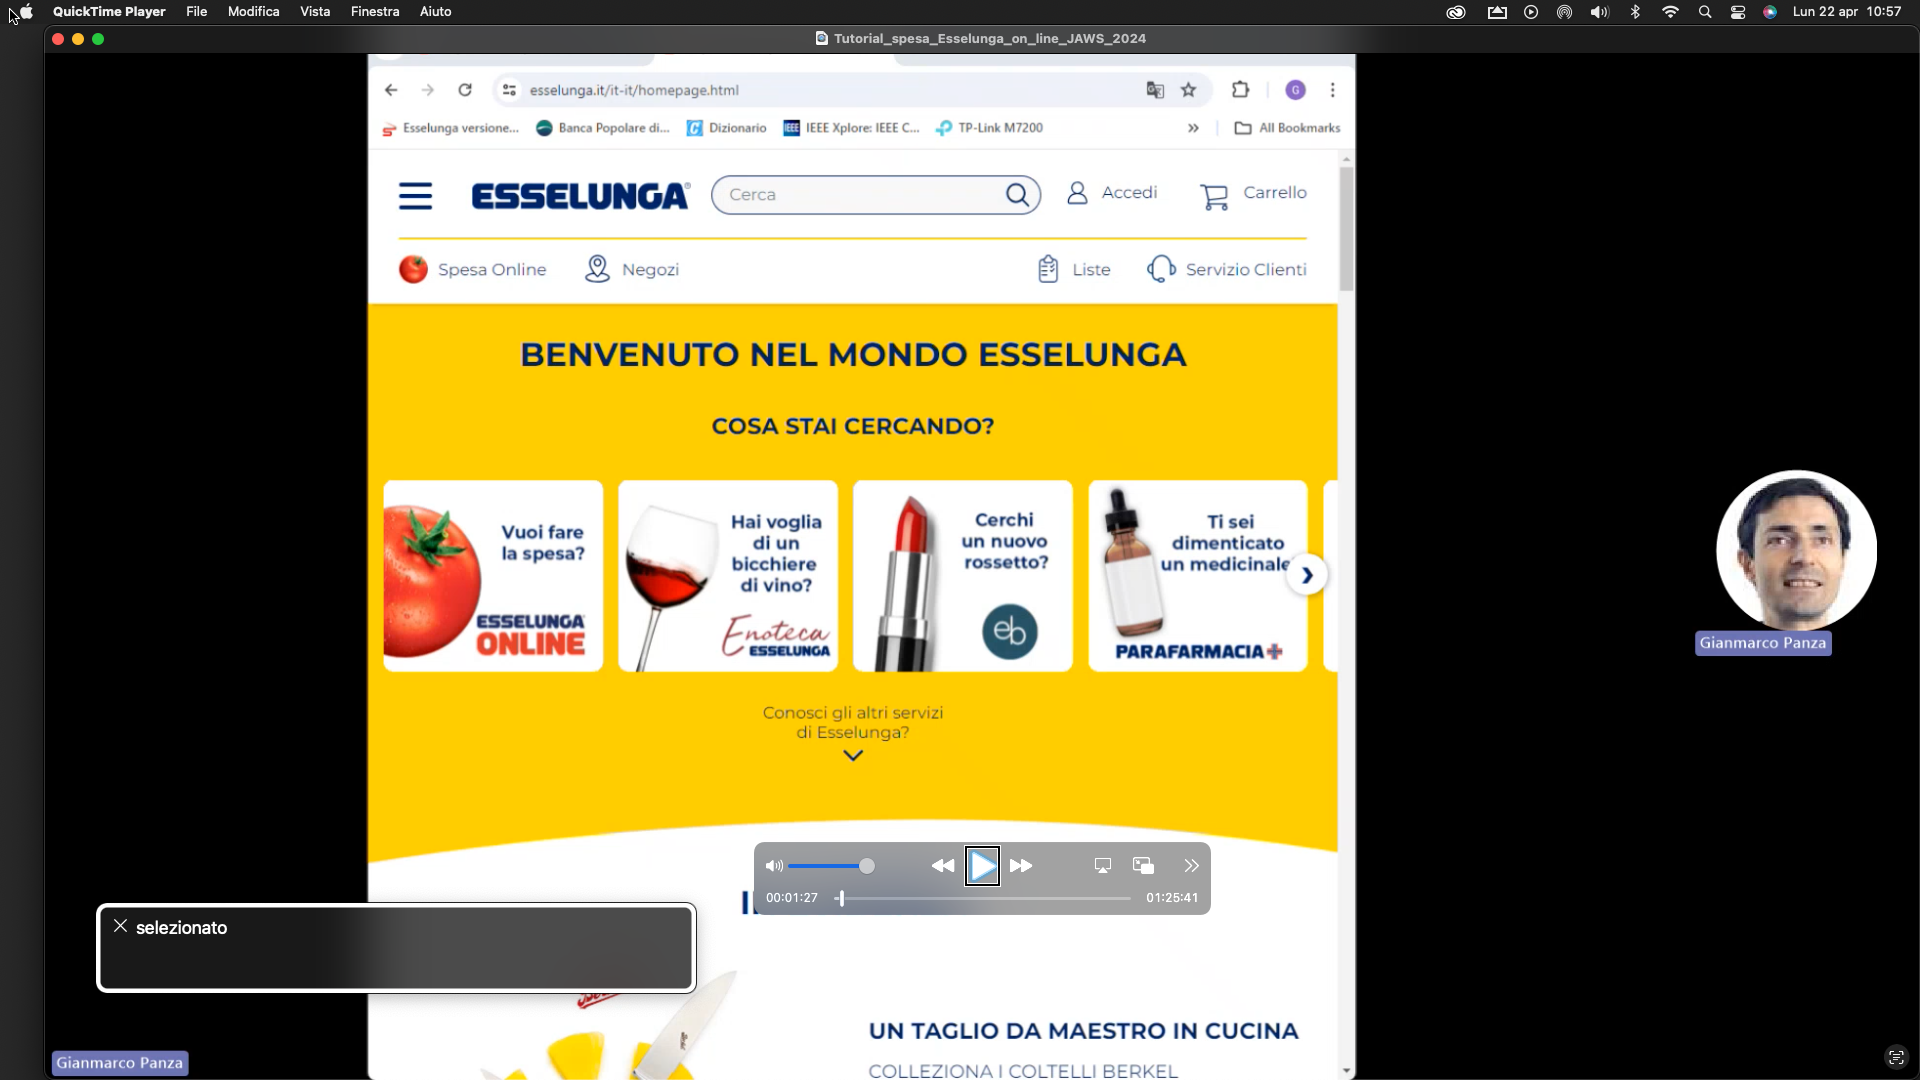 nell’immagine uno screenshot di un computer aperto sul sito e-commerce della Esselunga